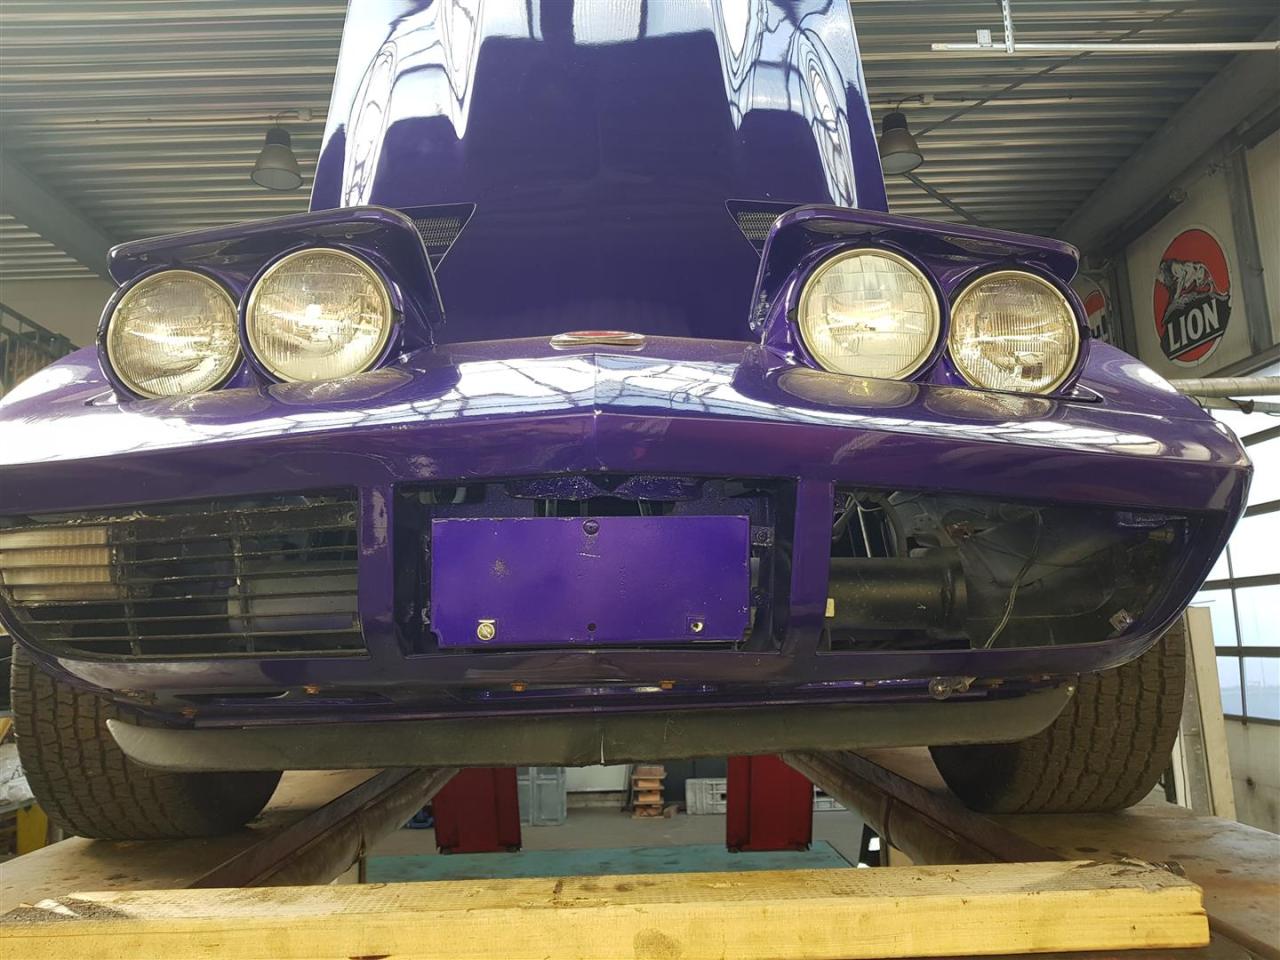 1973 Chevrolet Corvette &#039;&#039;73 cabrio purple